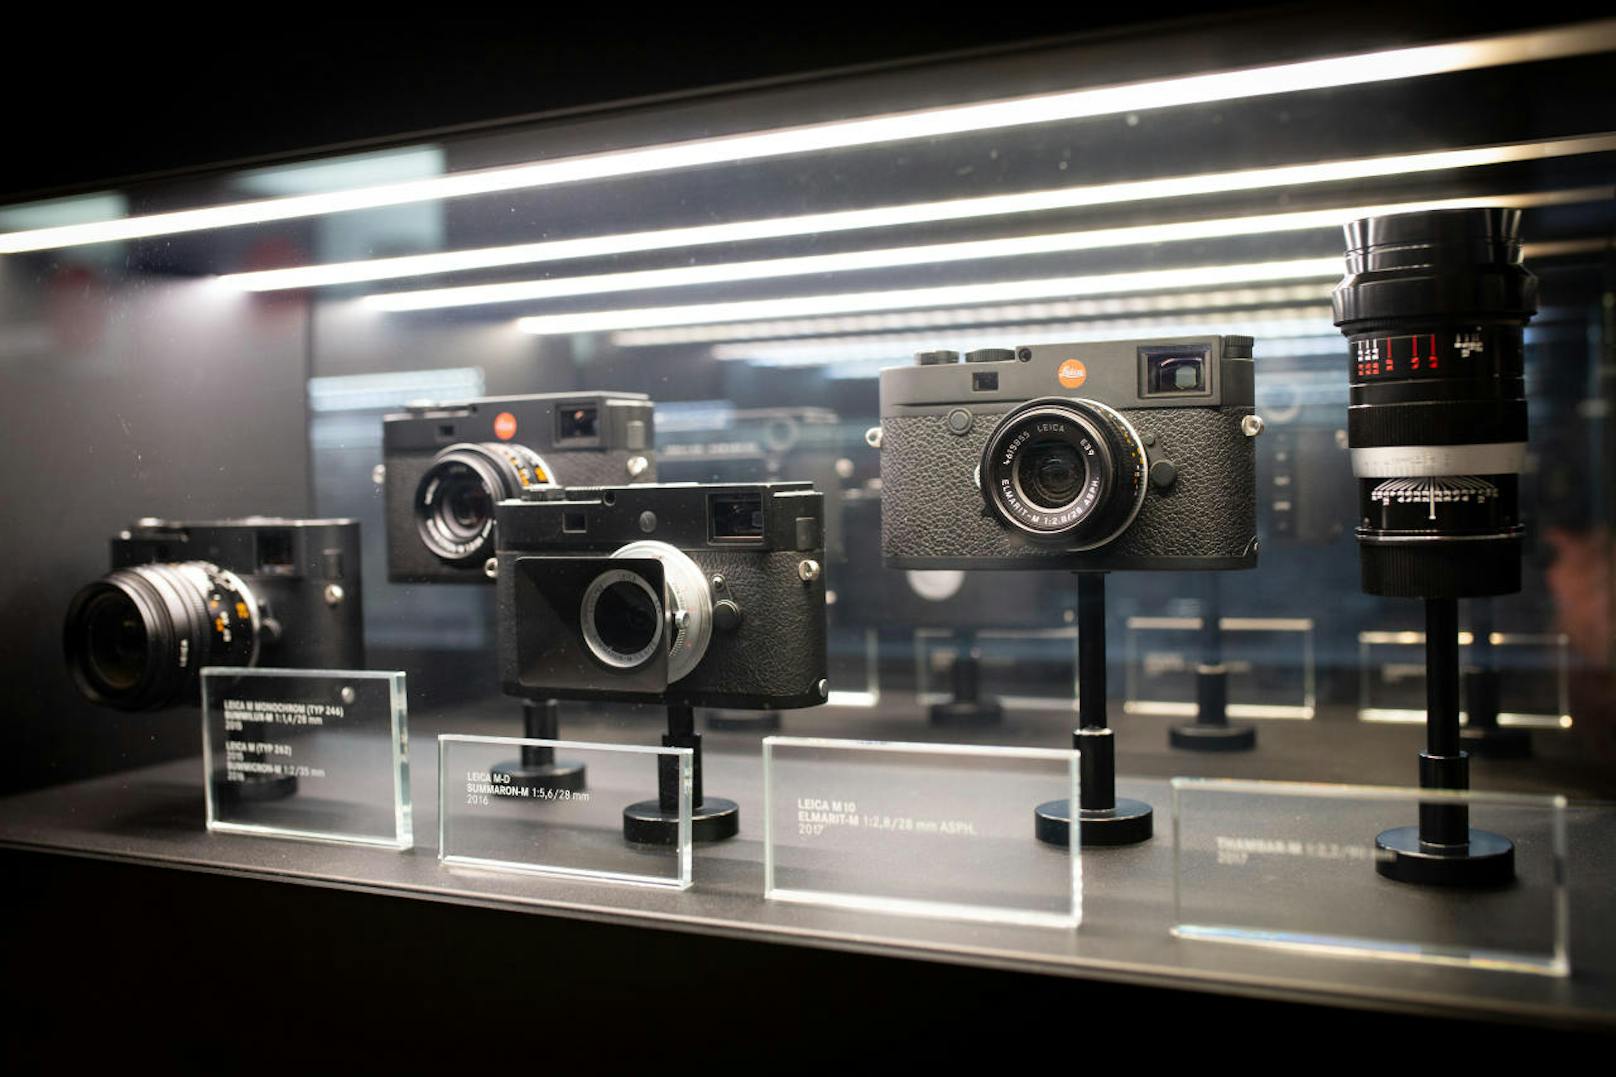 "Leica ist eine Marke, deren Geschichte mehr als 100 Jahre zurückreicht. Der Schlüssel zu unserem gemeinsamen Erfolg ist, die Bedürfnisse und Wünsche unserer Nutzer kontinuierlich zu erkennen und sie mit den bestmöglichen Lösungen zu erfüllen", so Marius Eschweiler von Leica.